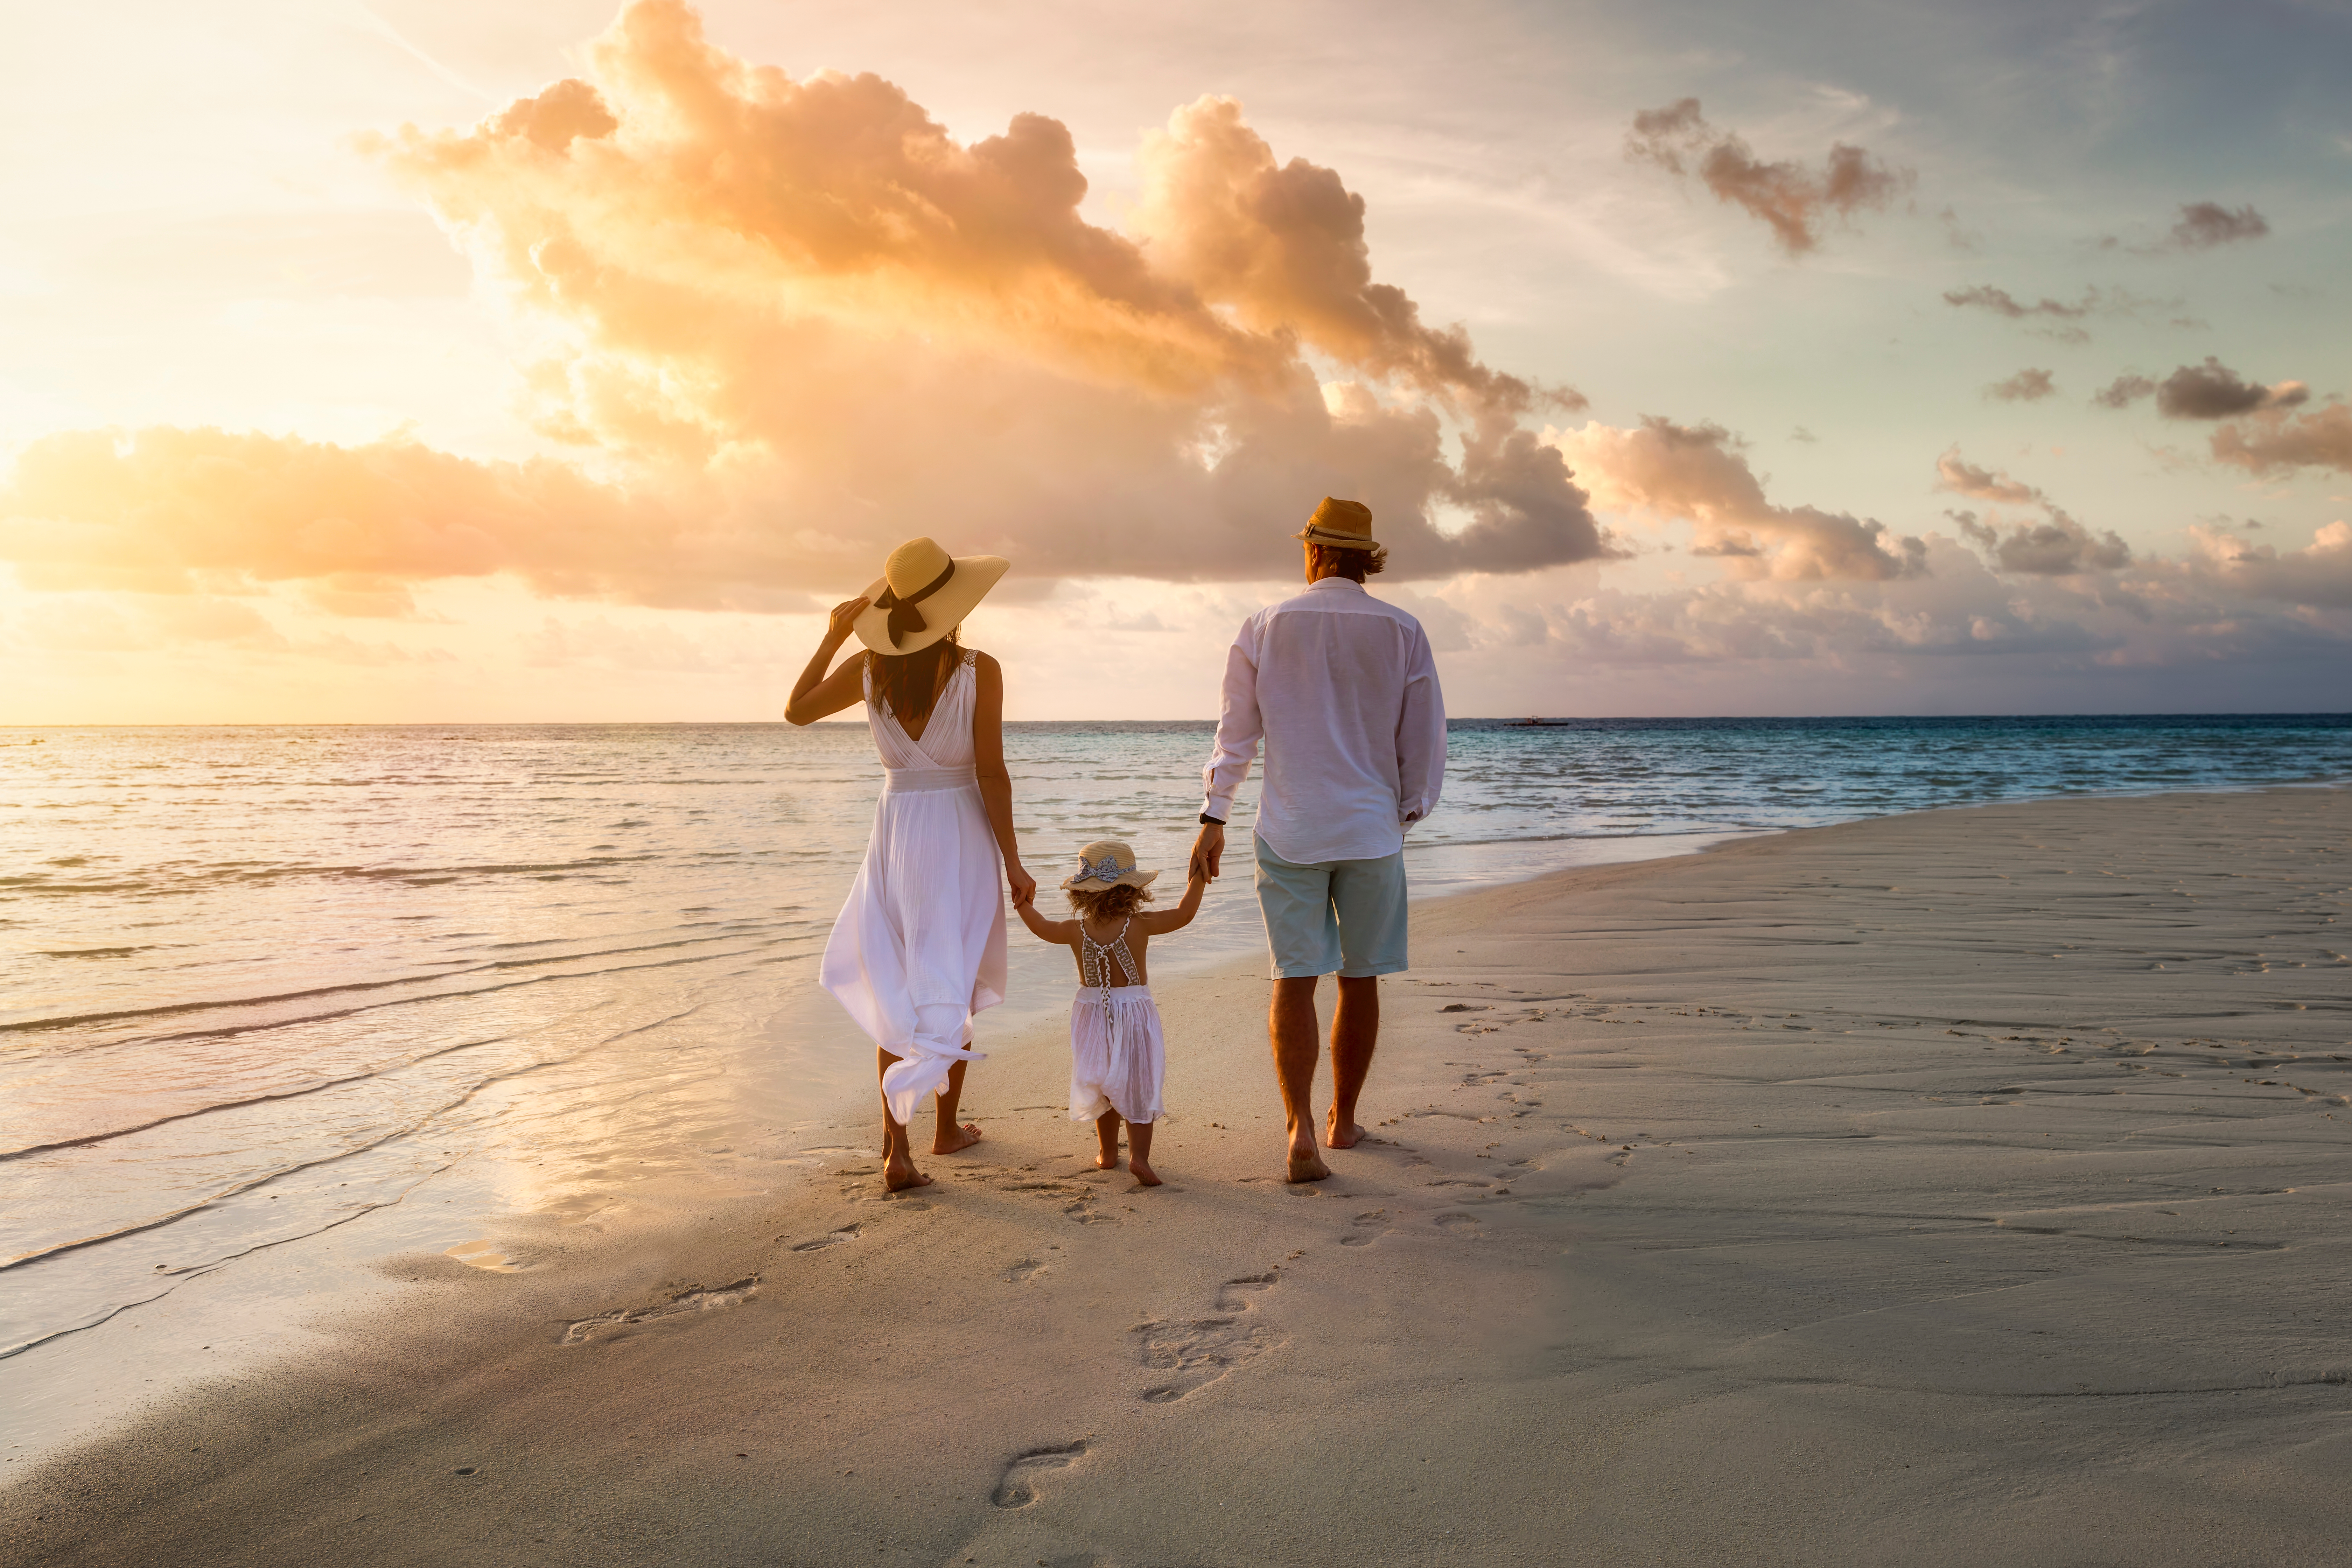 Una elegante familia con ropa blanca de verano paseando de la mano por una playa paradisíaca tropical durante la puesta de sol | Foto: Shutterstock